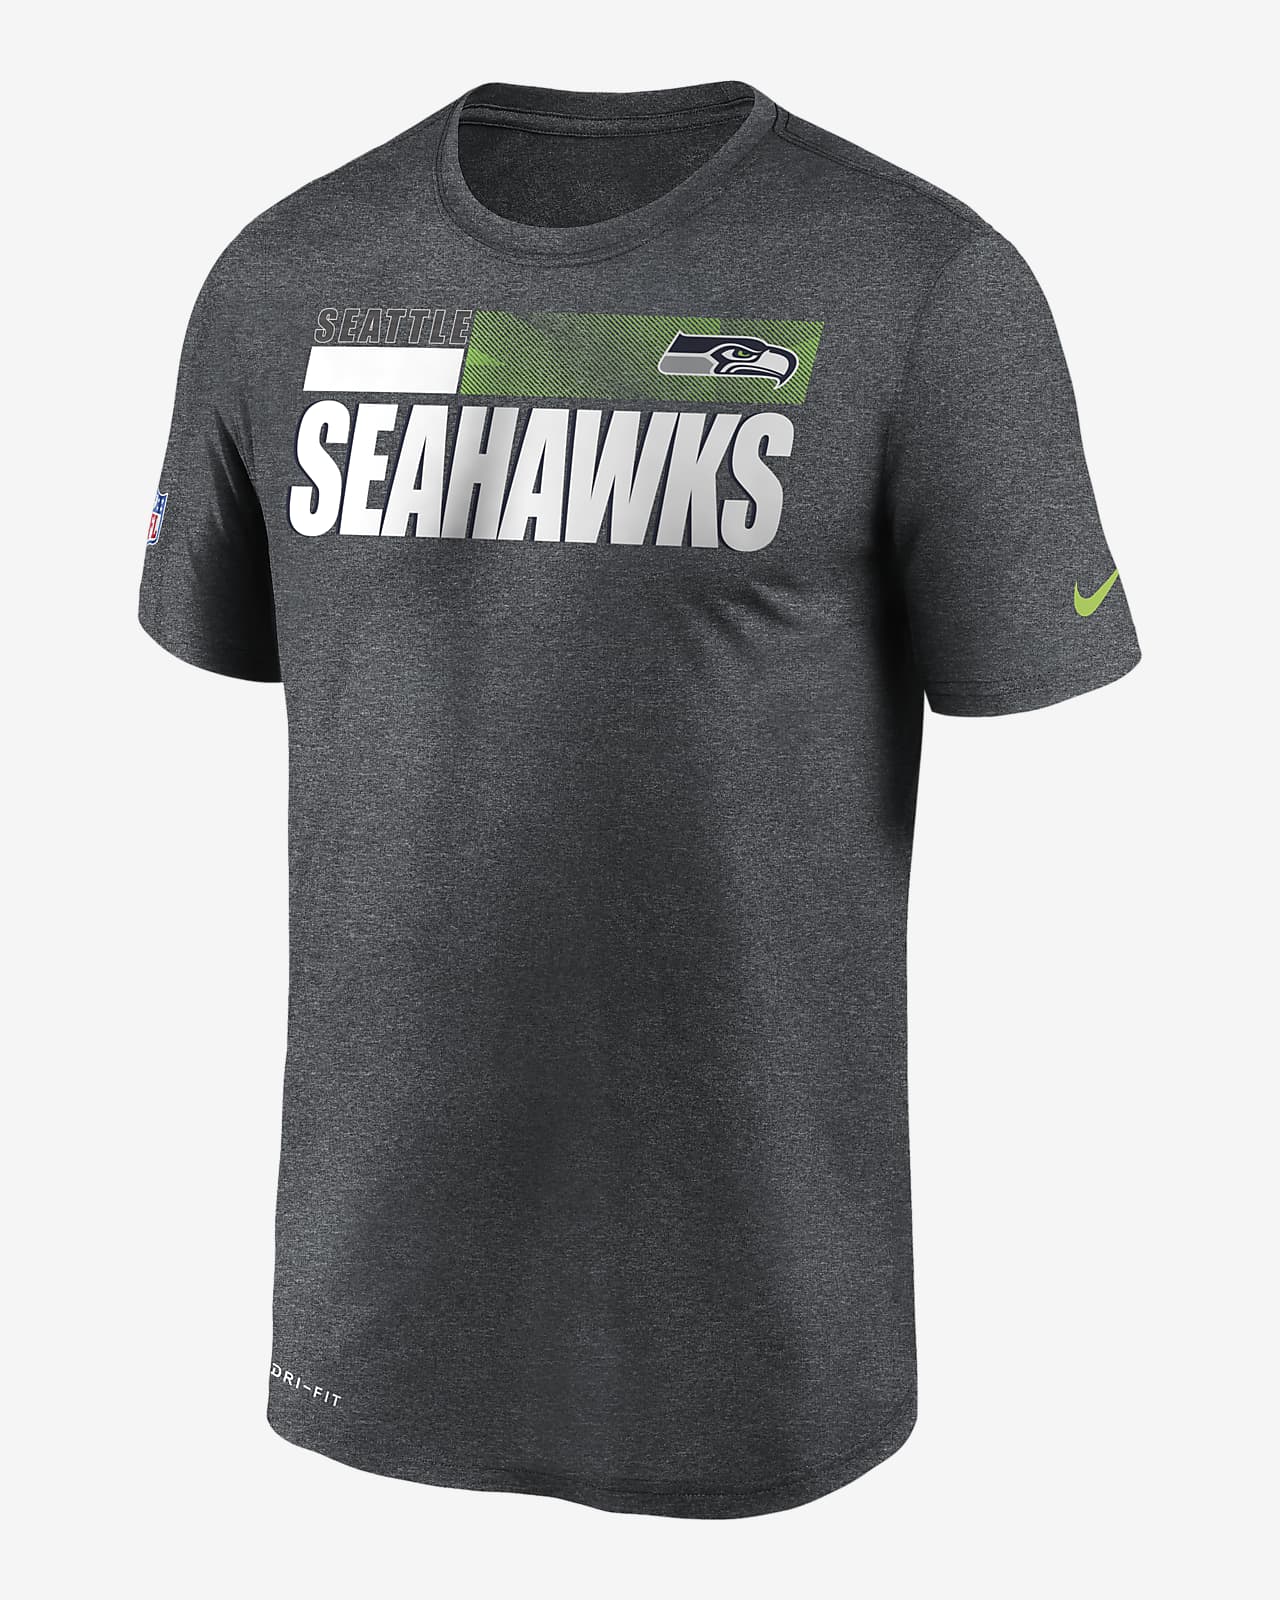 seahawks nike shirt